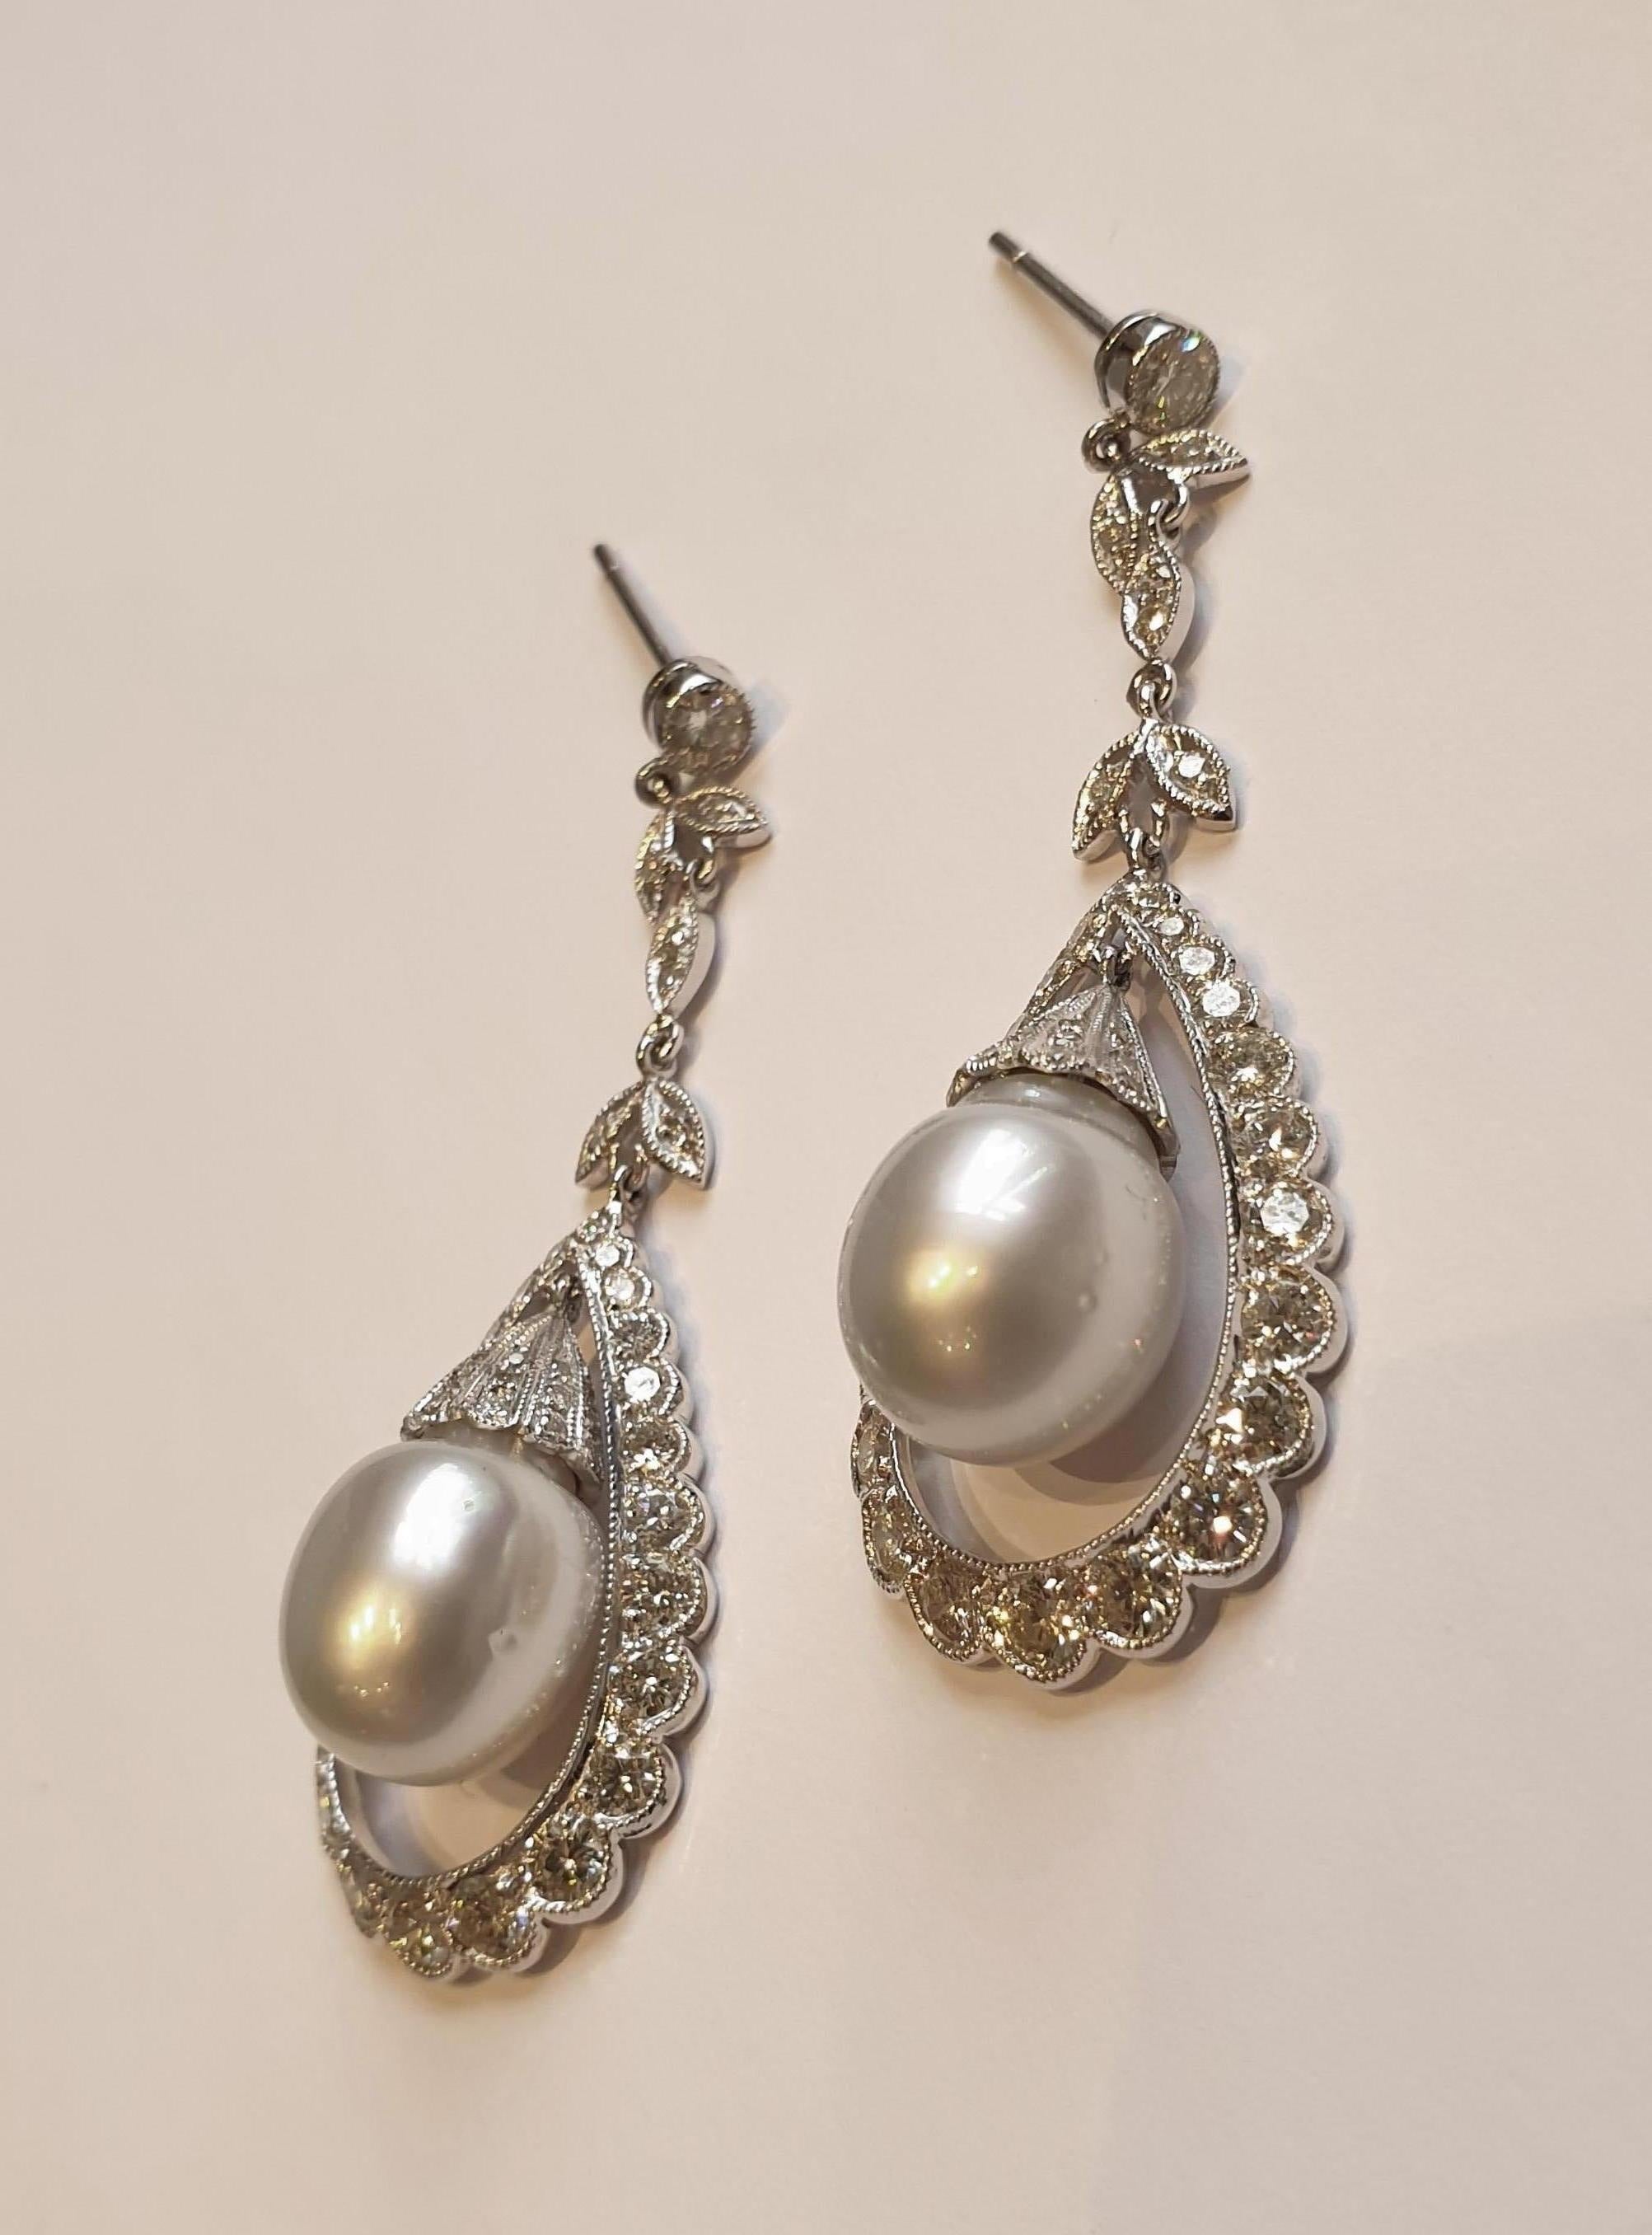 Style Art déco, Suède, vers 1930. Ensemble monté en or blanc 18 carats. Chaque boucle d'oreille contient une perle blanche des mers du Sud mesurant 11,4 mm de diamètre. Bordée de 92 diamants taille brillant d'un poids total d'environ 4,02 ct.